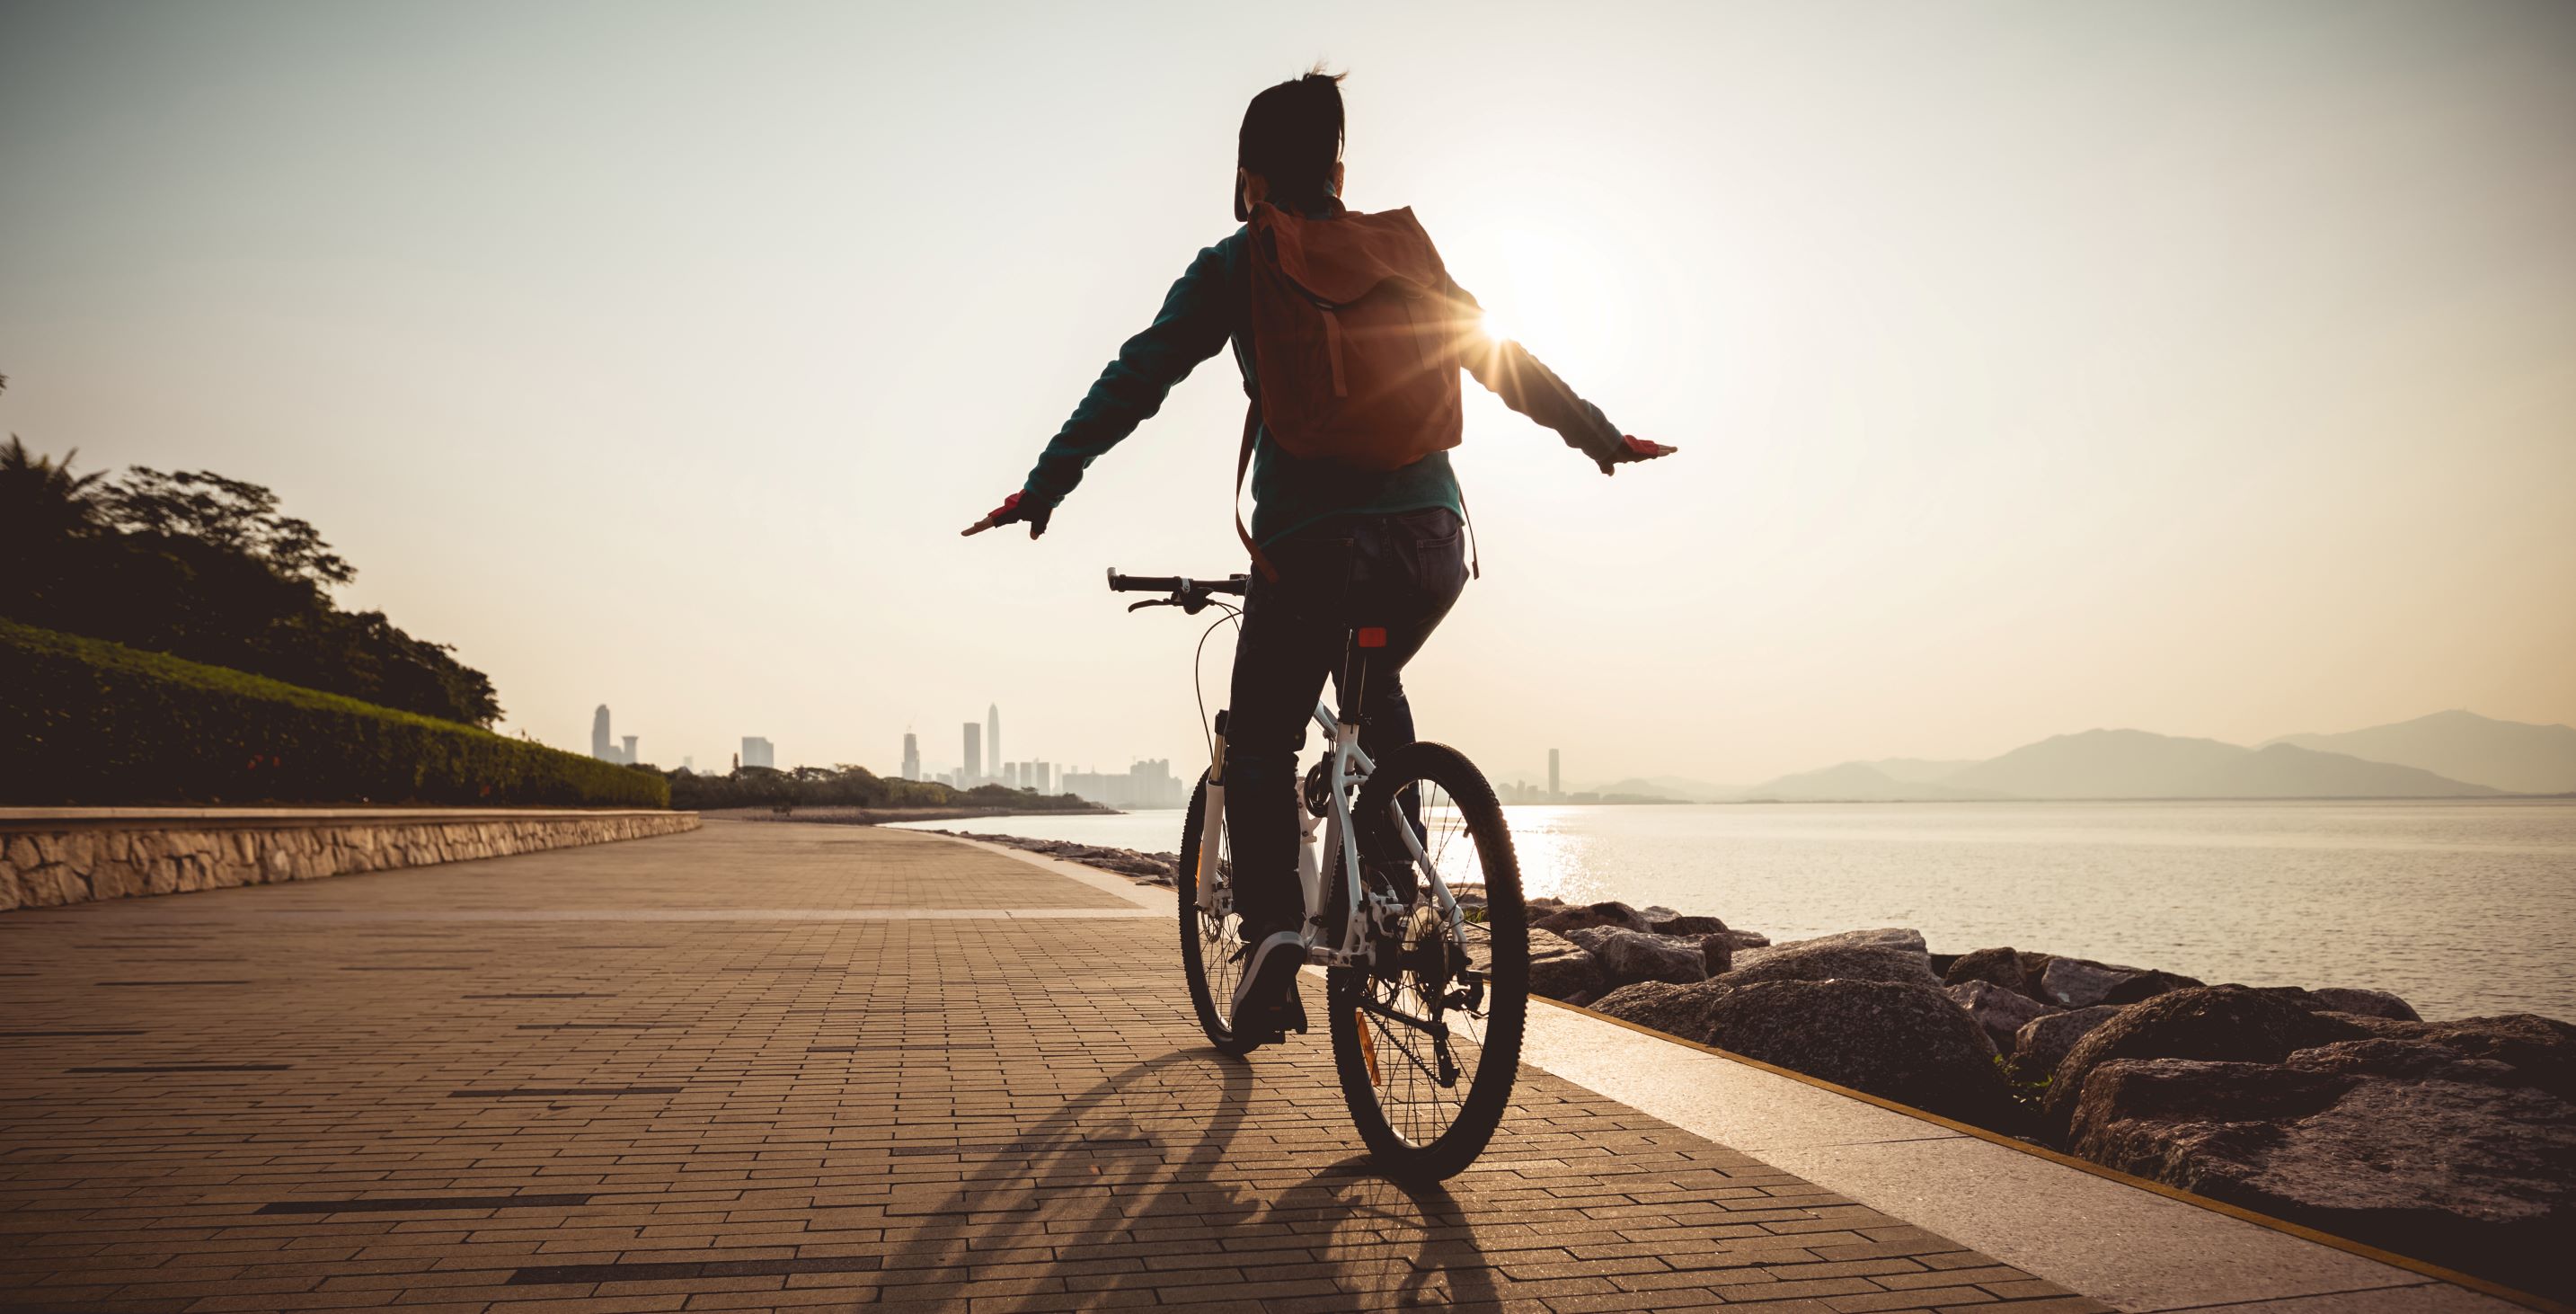 psihička ravnoteža i sagorjele kalorije tijekom vožnje biciklom